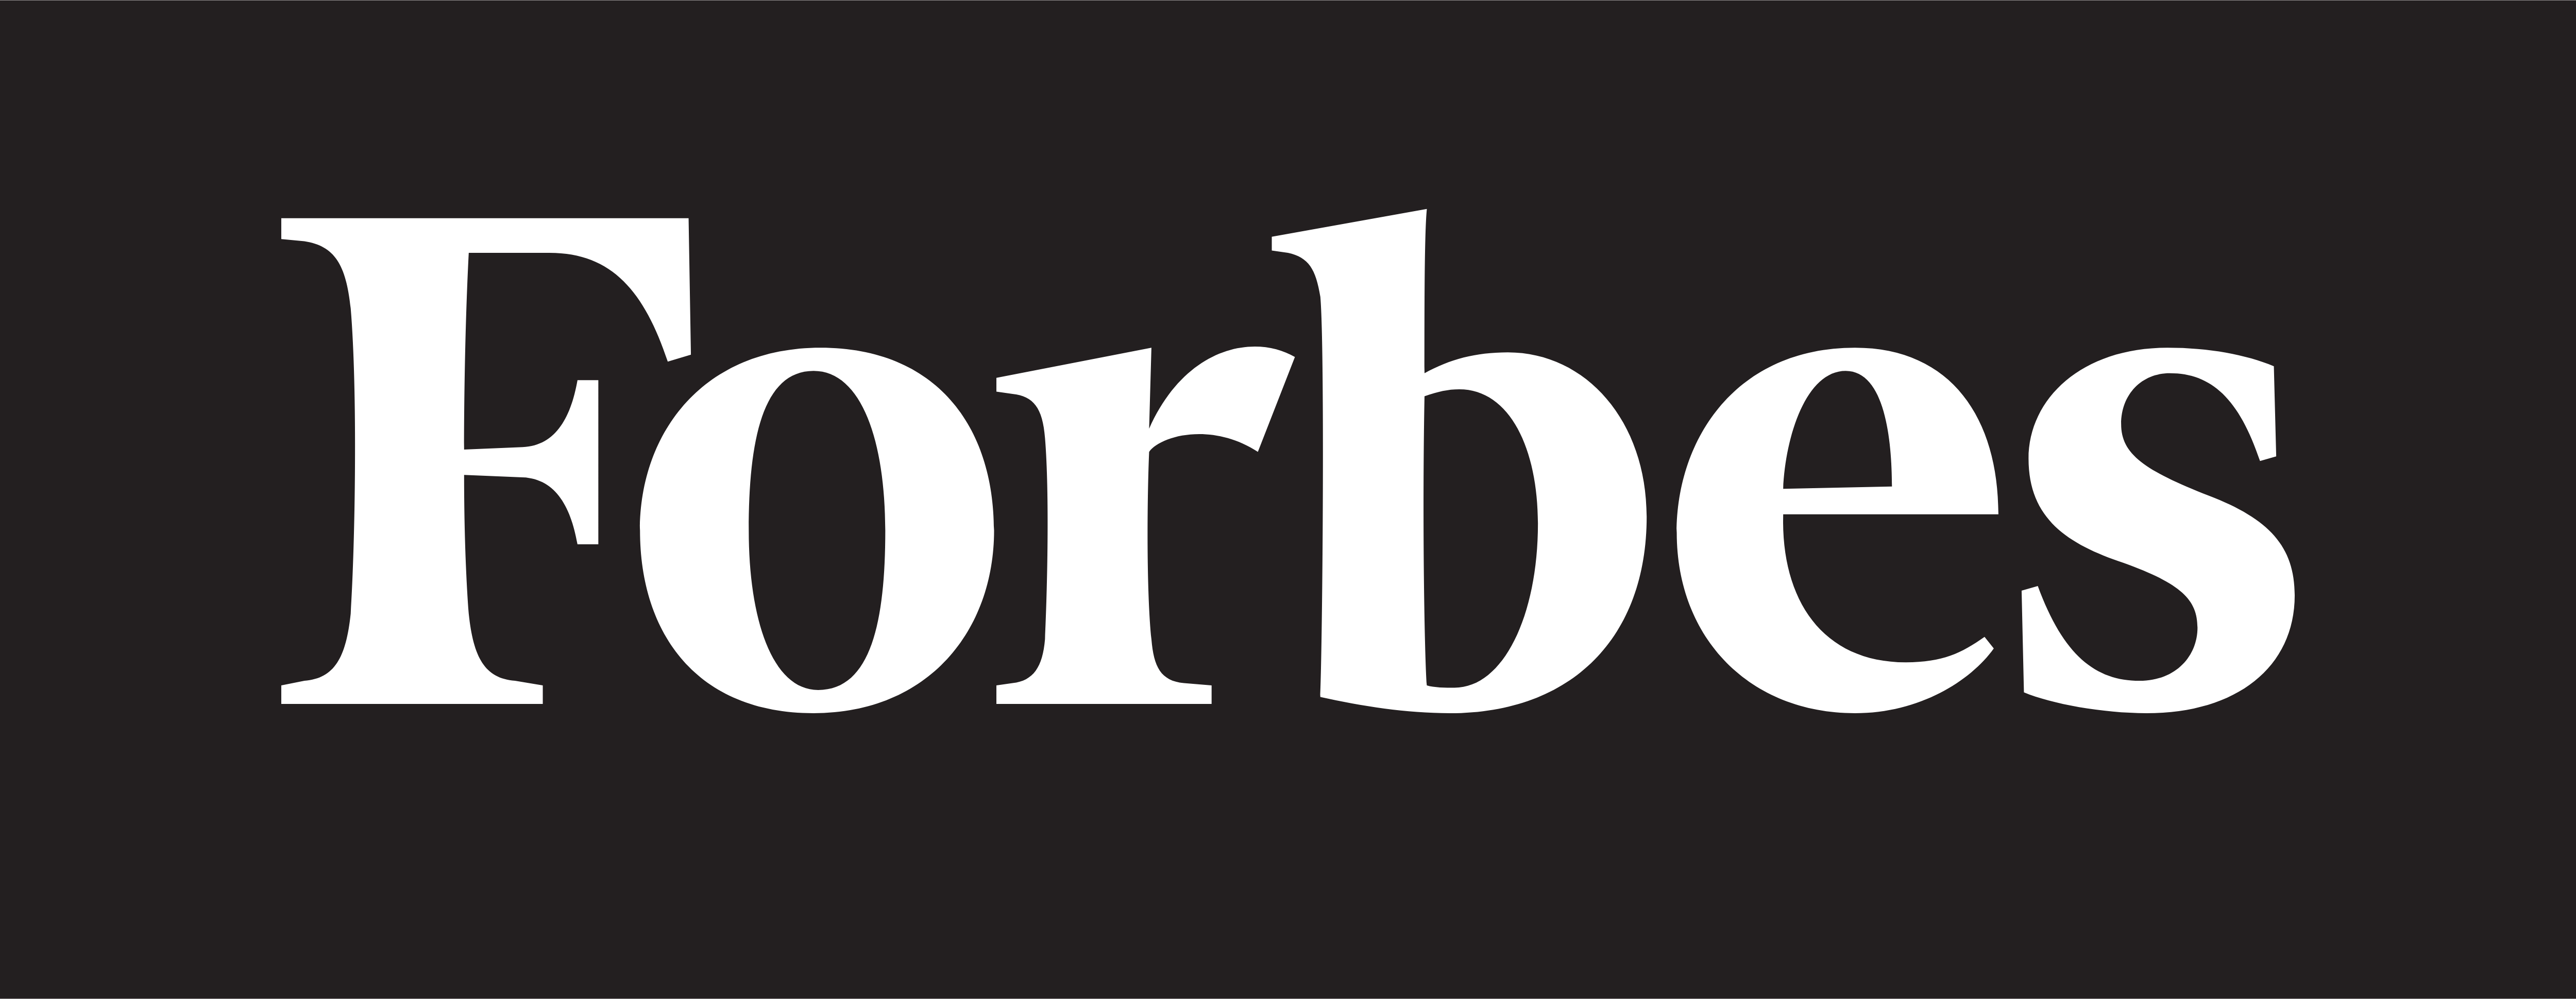 Forbes – Descarcă logo-uri